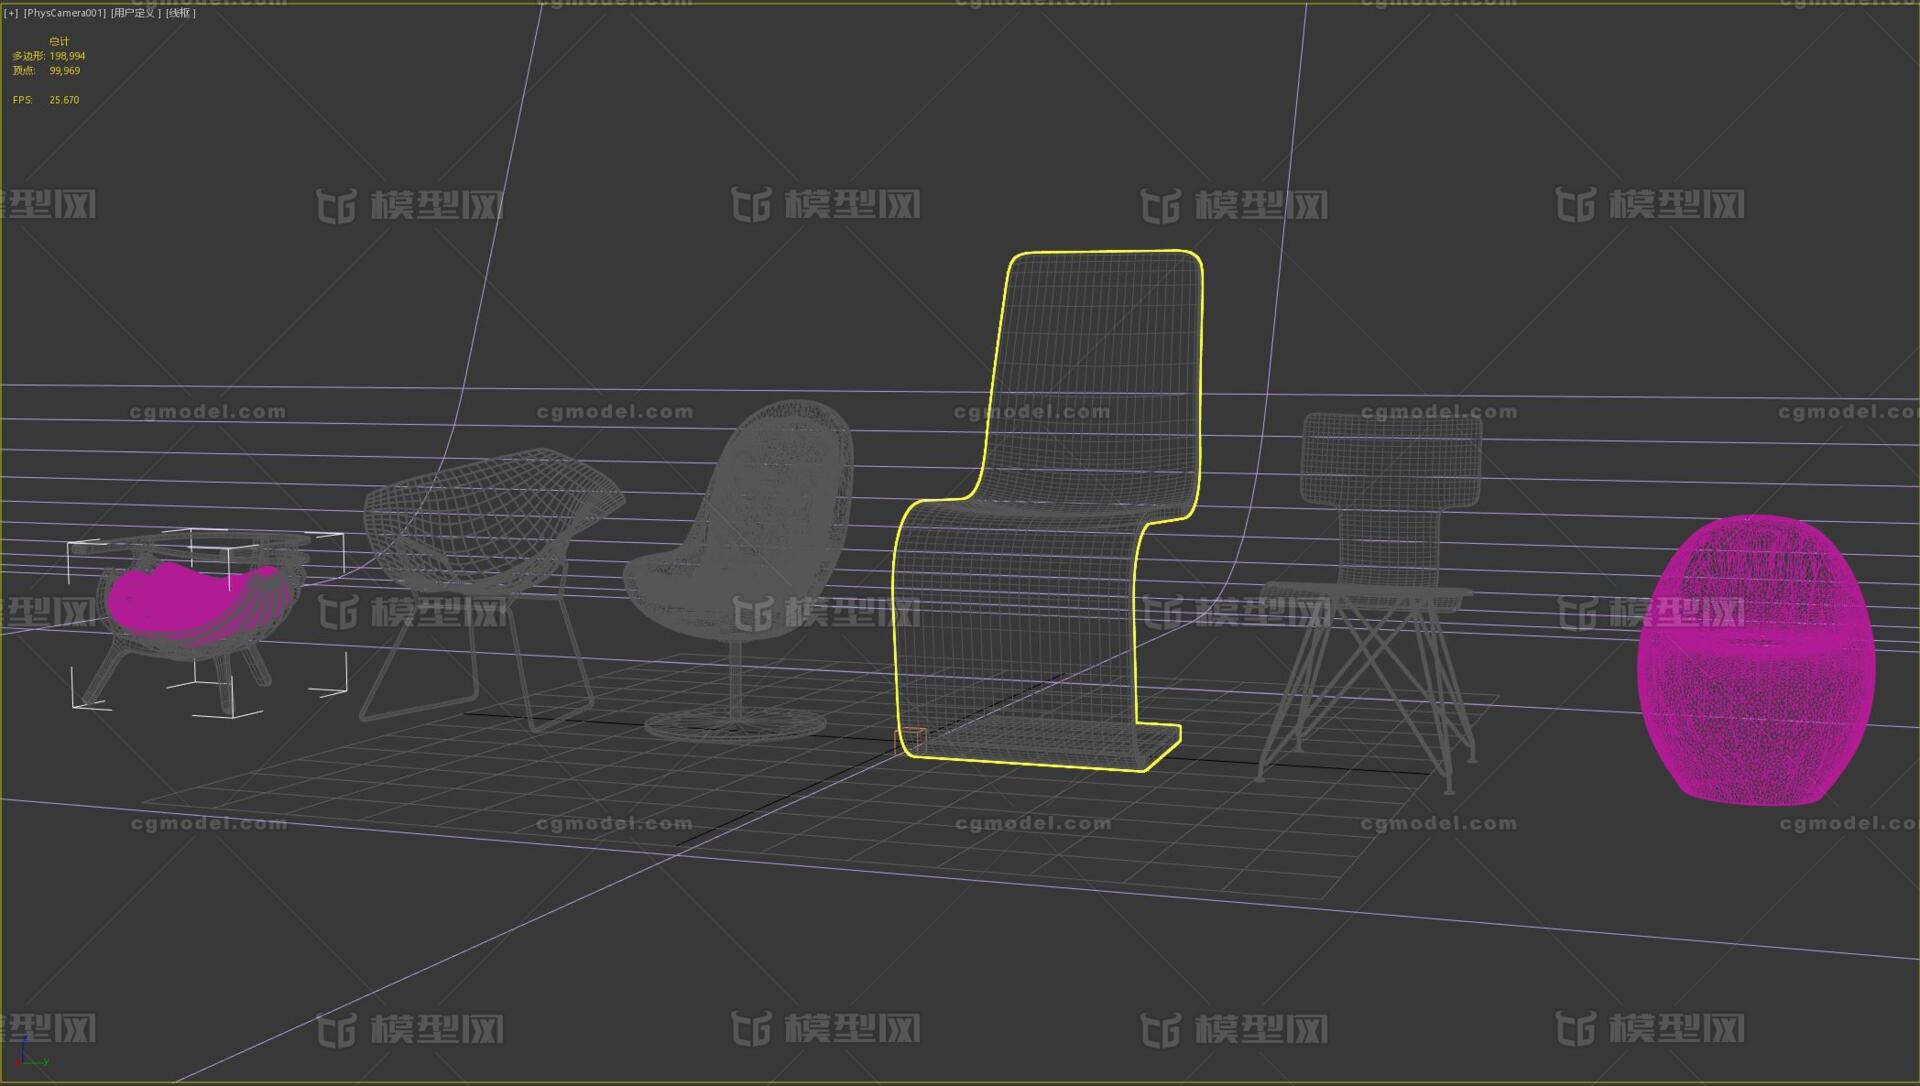 座椅椅子凳子木质椅子皮椅金属编制椅子 Cg模型网 Cgmodel 三维设计师交流互动平台 专注多品类3d模型下载 原创作品分享 软件学习